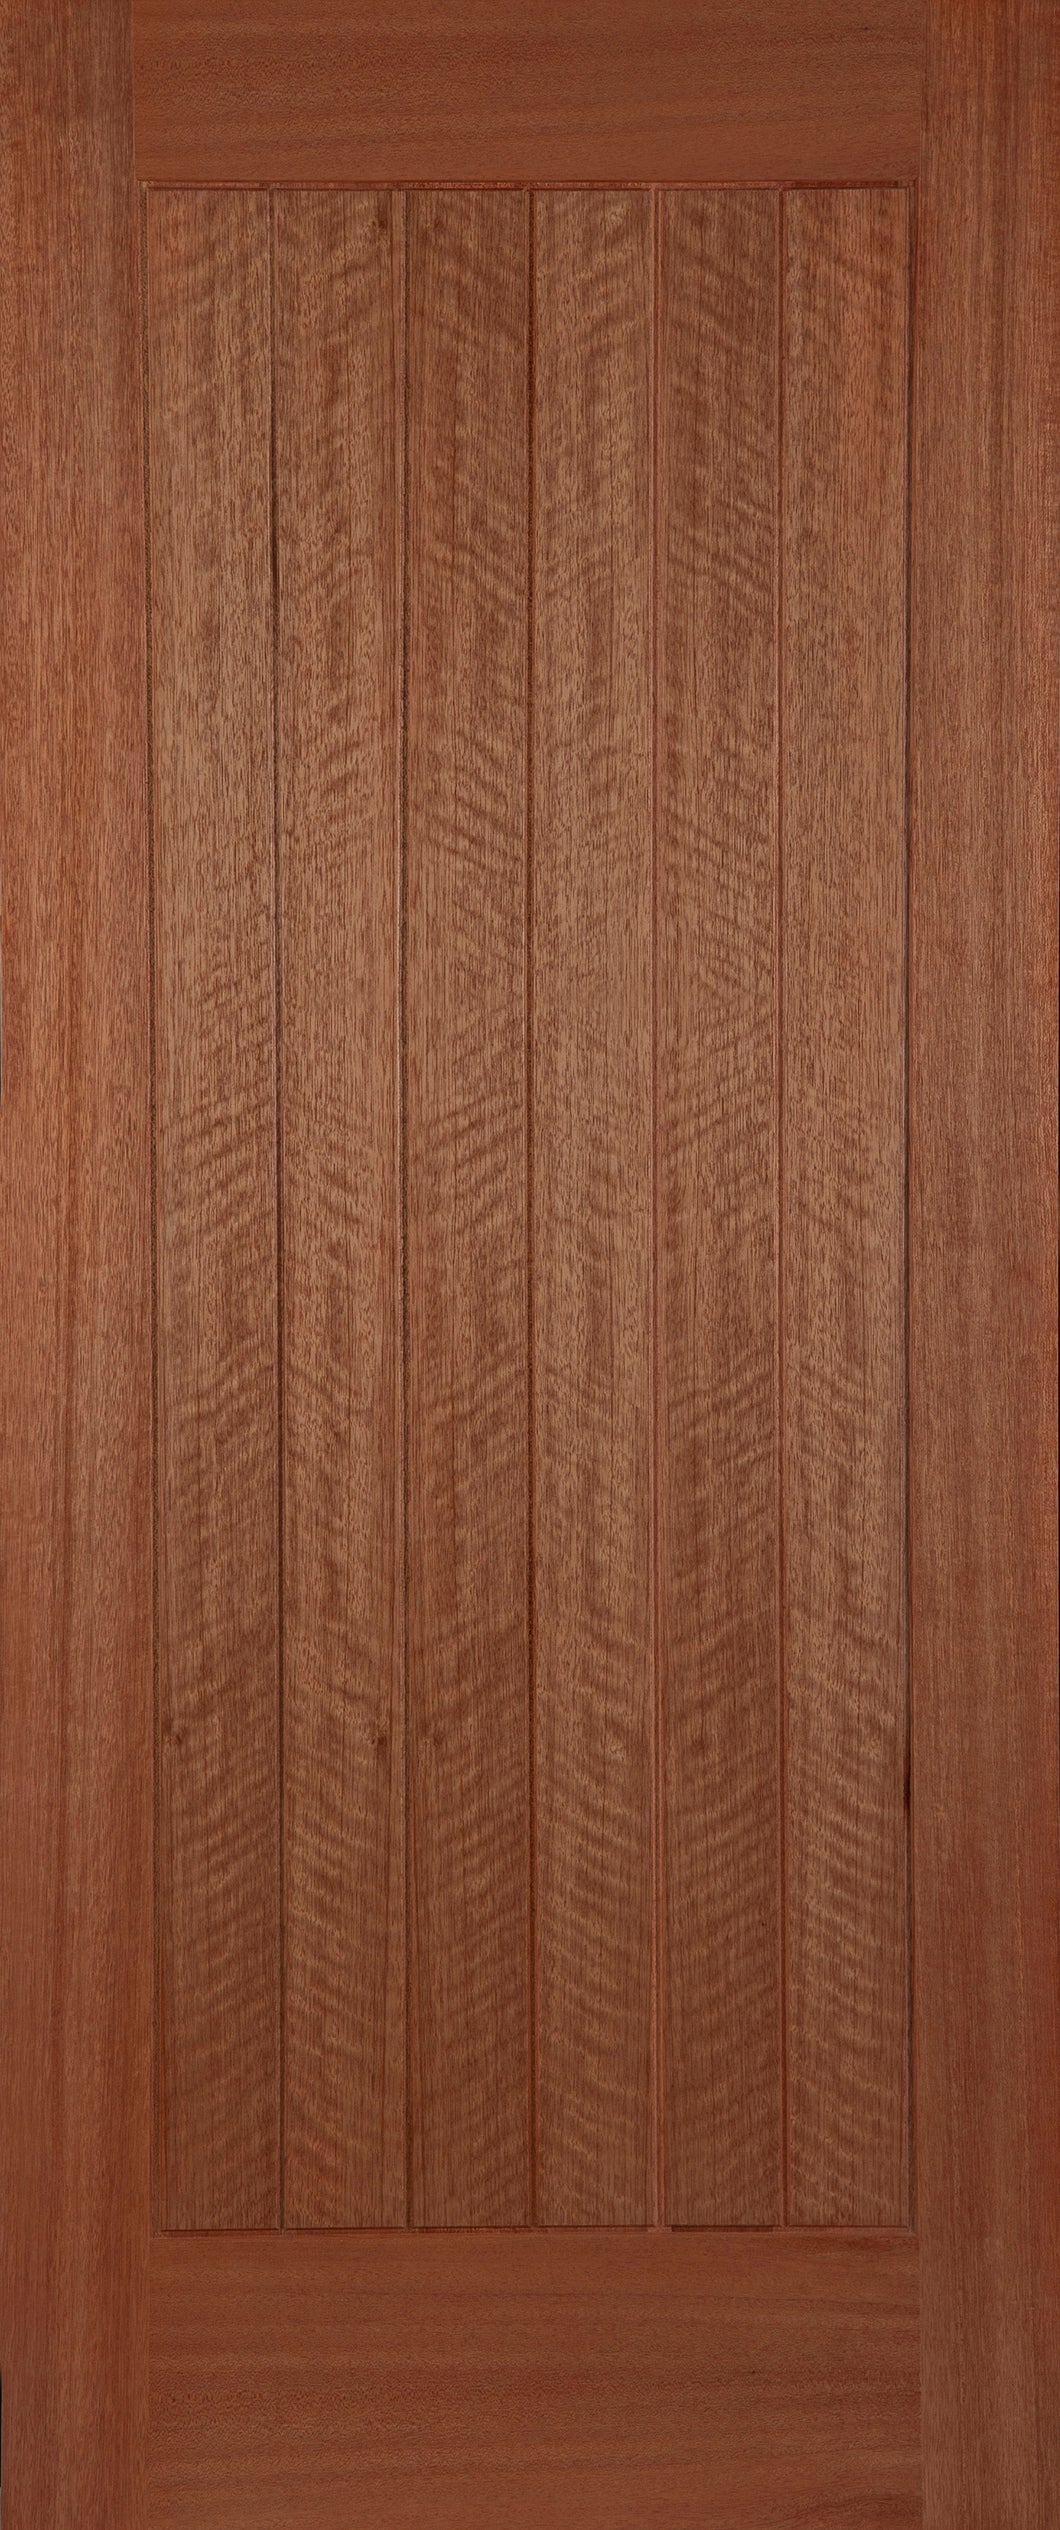 External Hardwood Waterford